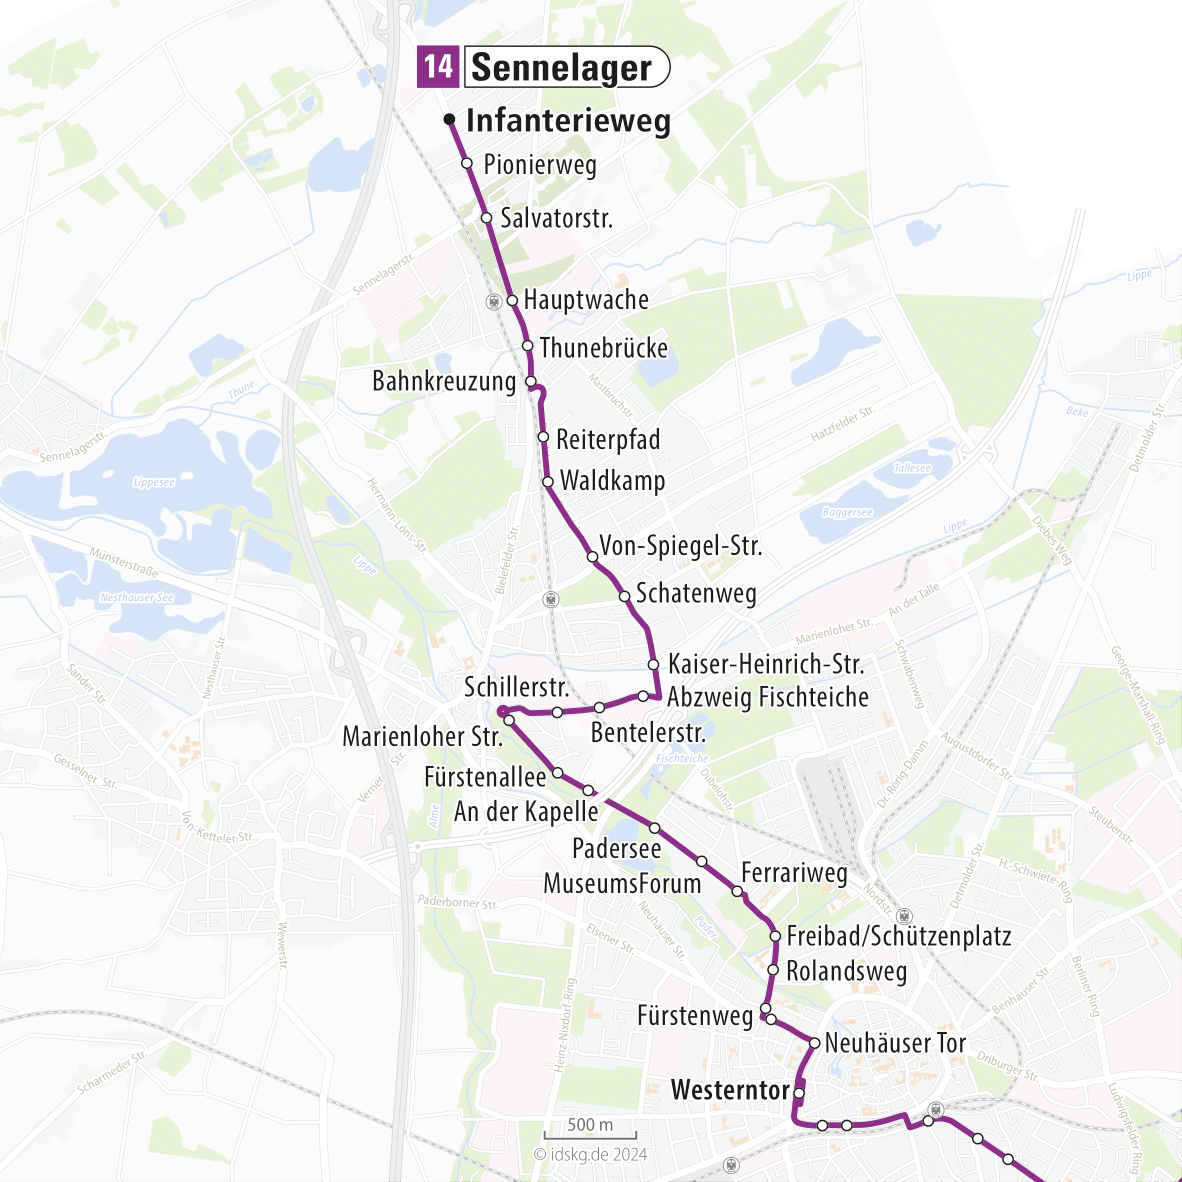 Kartenausschnitt der Linie 14 Sennelager bis Innenstadt 15x15